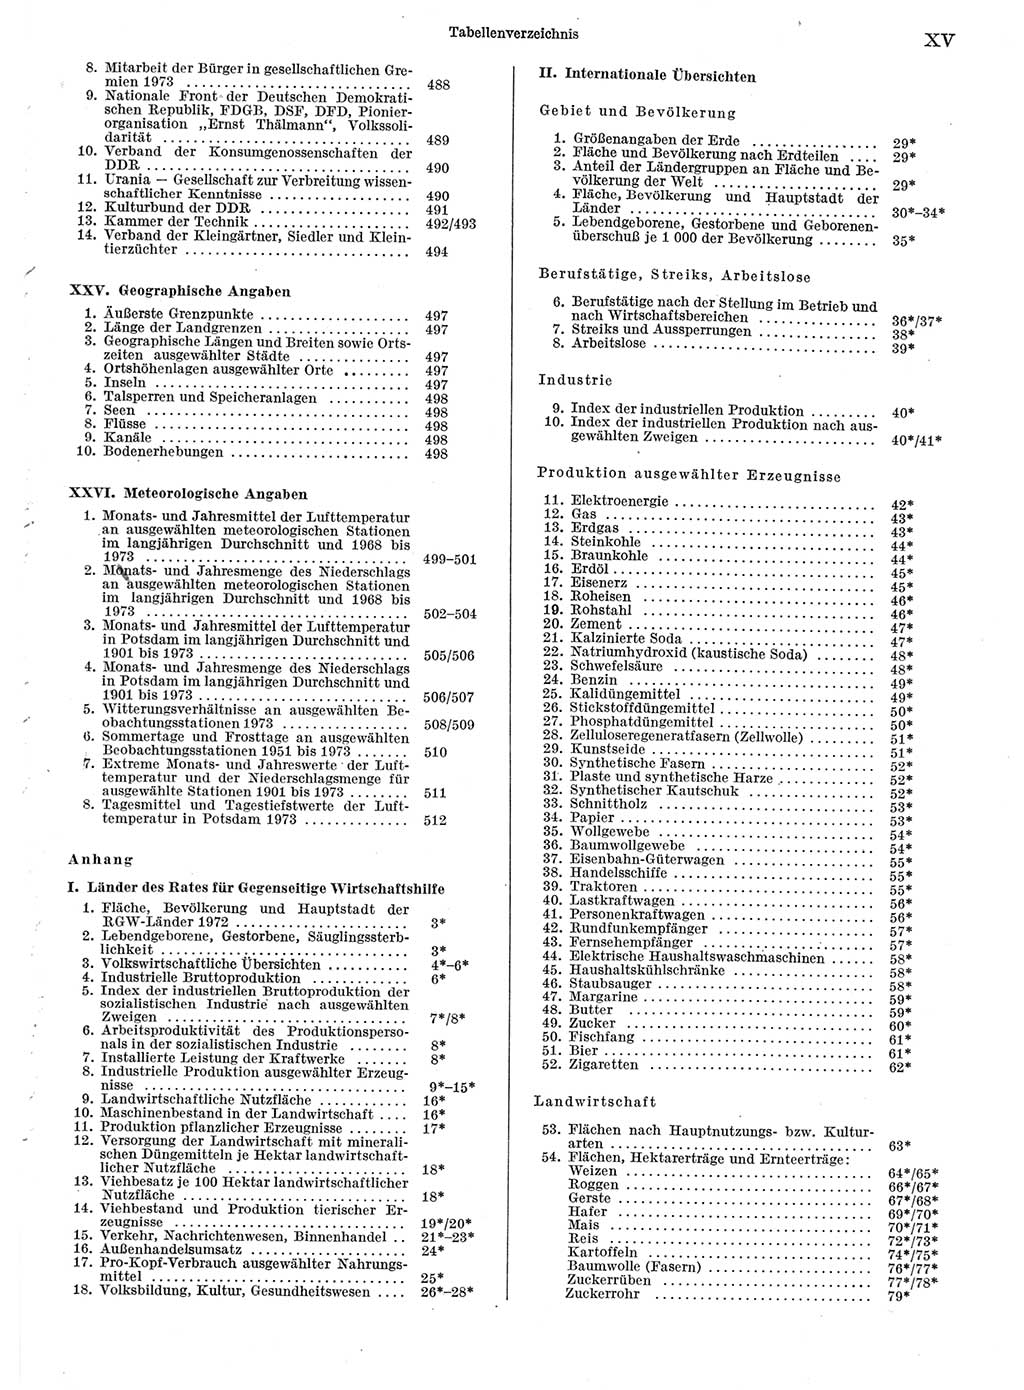 Statistisches Jahrbuch der Deutschen Demokratischen Republik (DDR) 1974, Seite 15 (Stat. Jb. DDR 1974, S. 15)